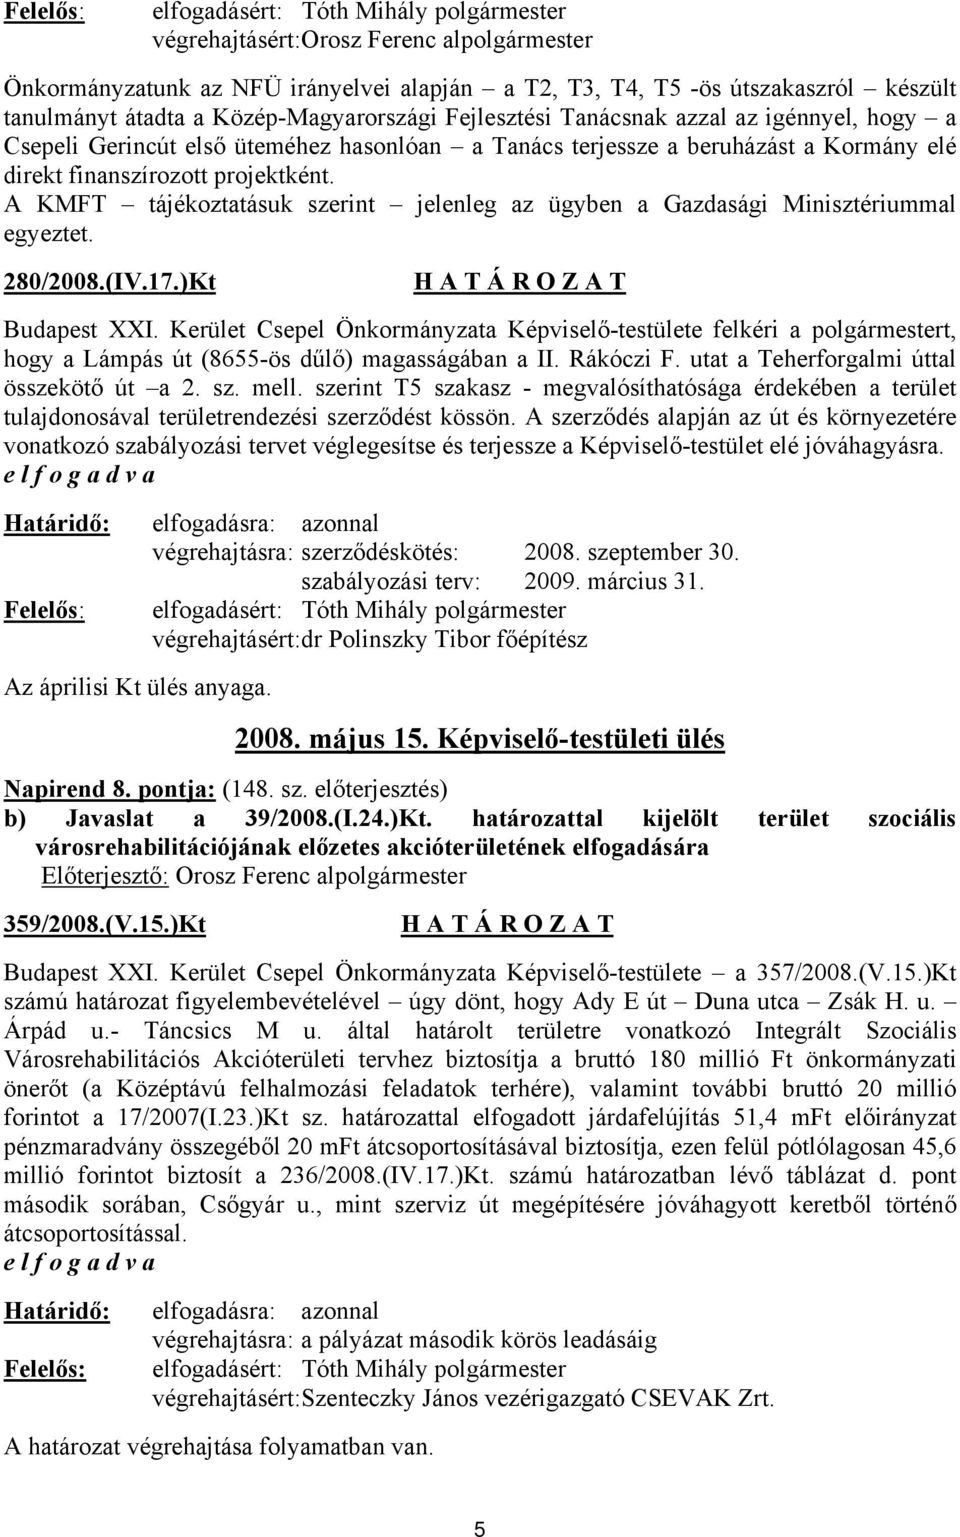 A KMFT tájékoztatásuk szerint jelenleg az ügyben a Gazdasági Minisztériummal egyeztet. 280/2008.(IV.17.)Kt Budapest XXI.